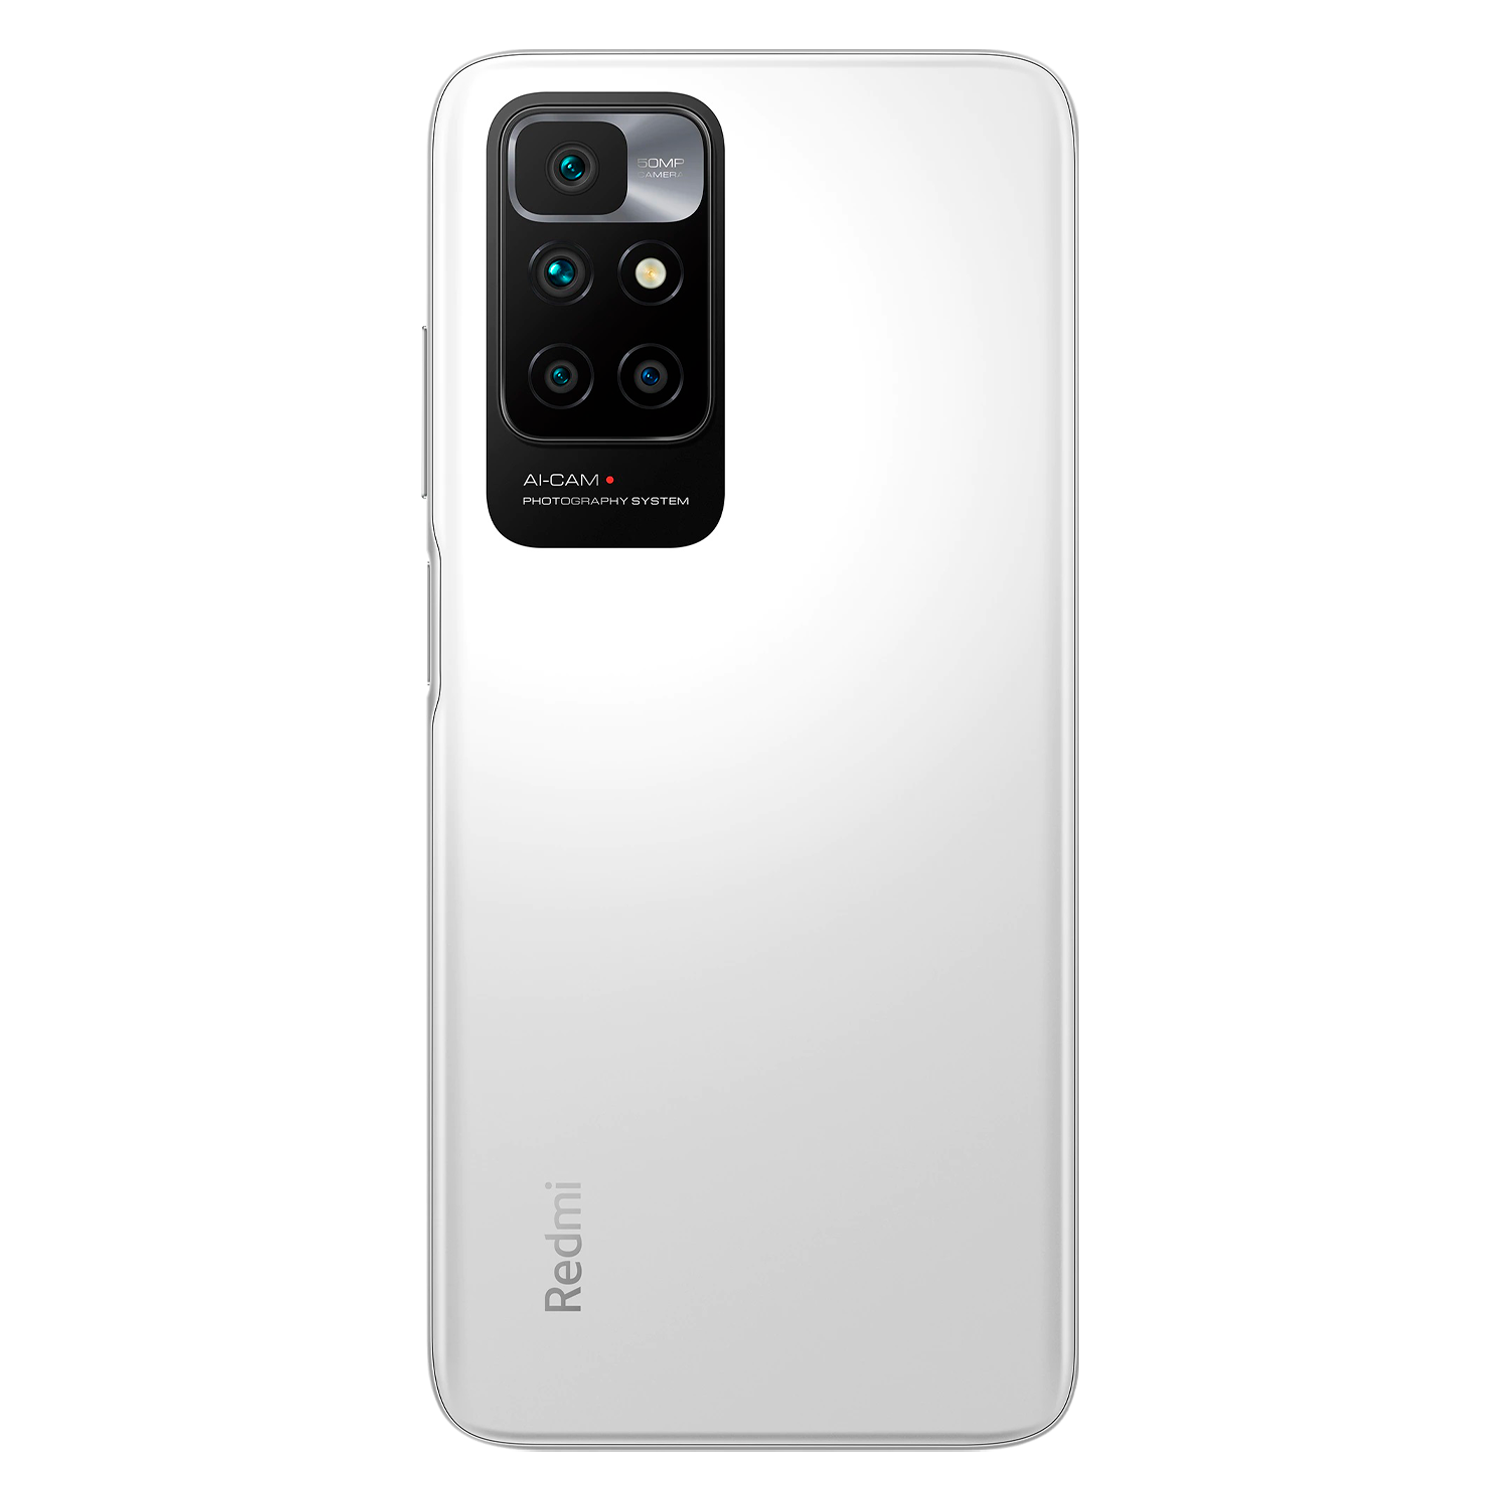 Celular Xiaomi Redmi 10 128GB / 6GB RAM / Dual SIM / Tela 6.5''/ Câmeras 50MP+8MP+2MP+2MP e 8MP - Branco (Global)(2022)
